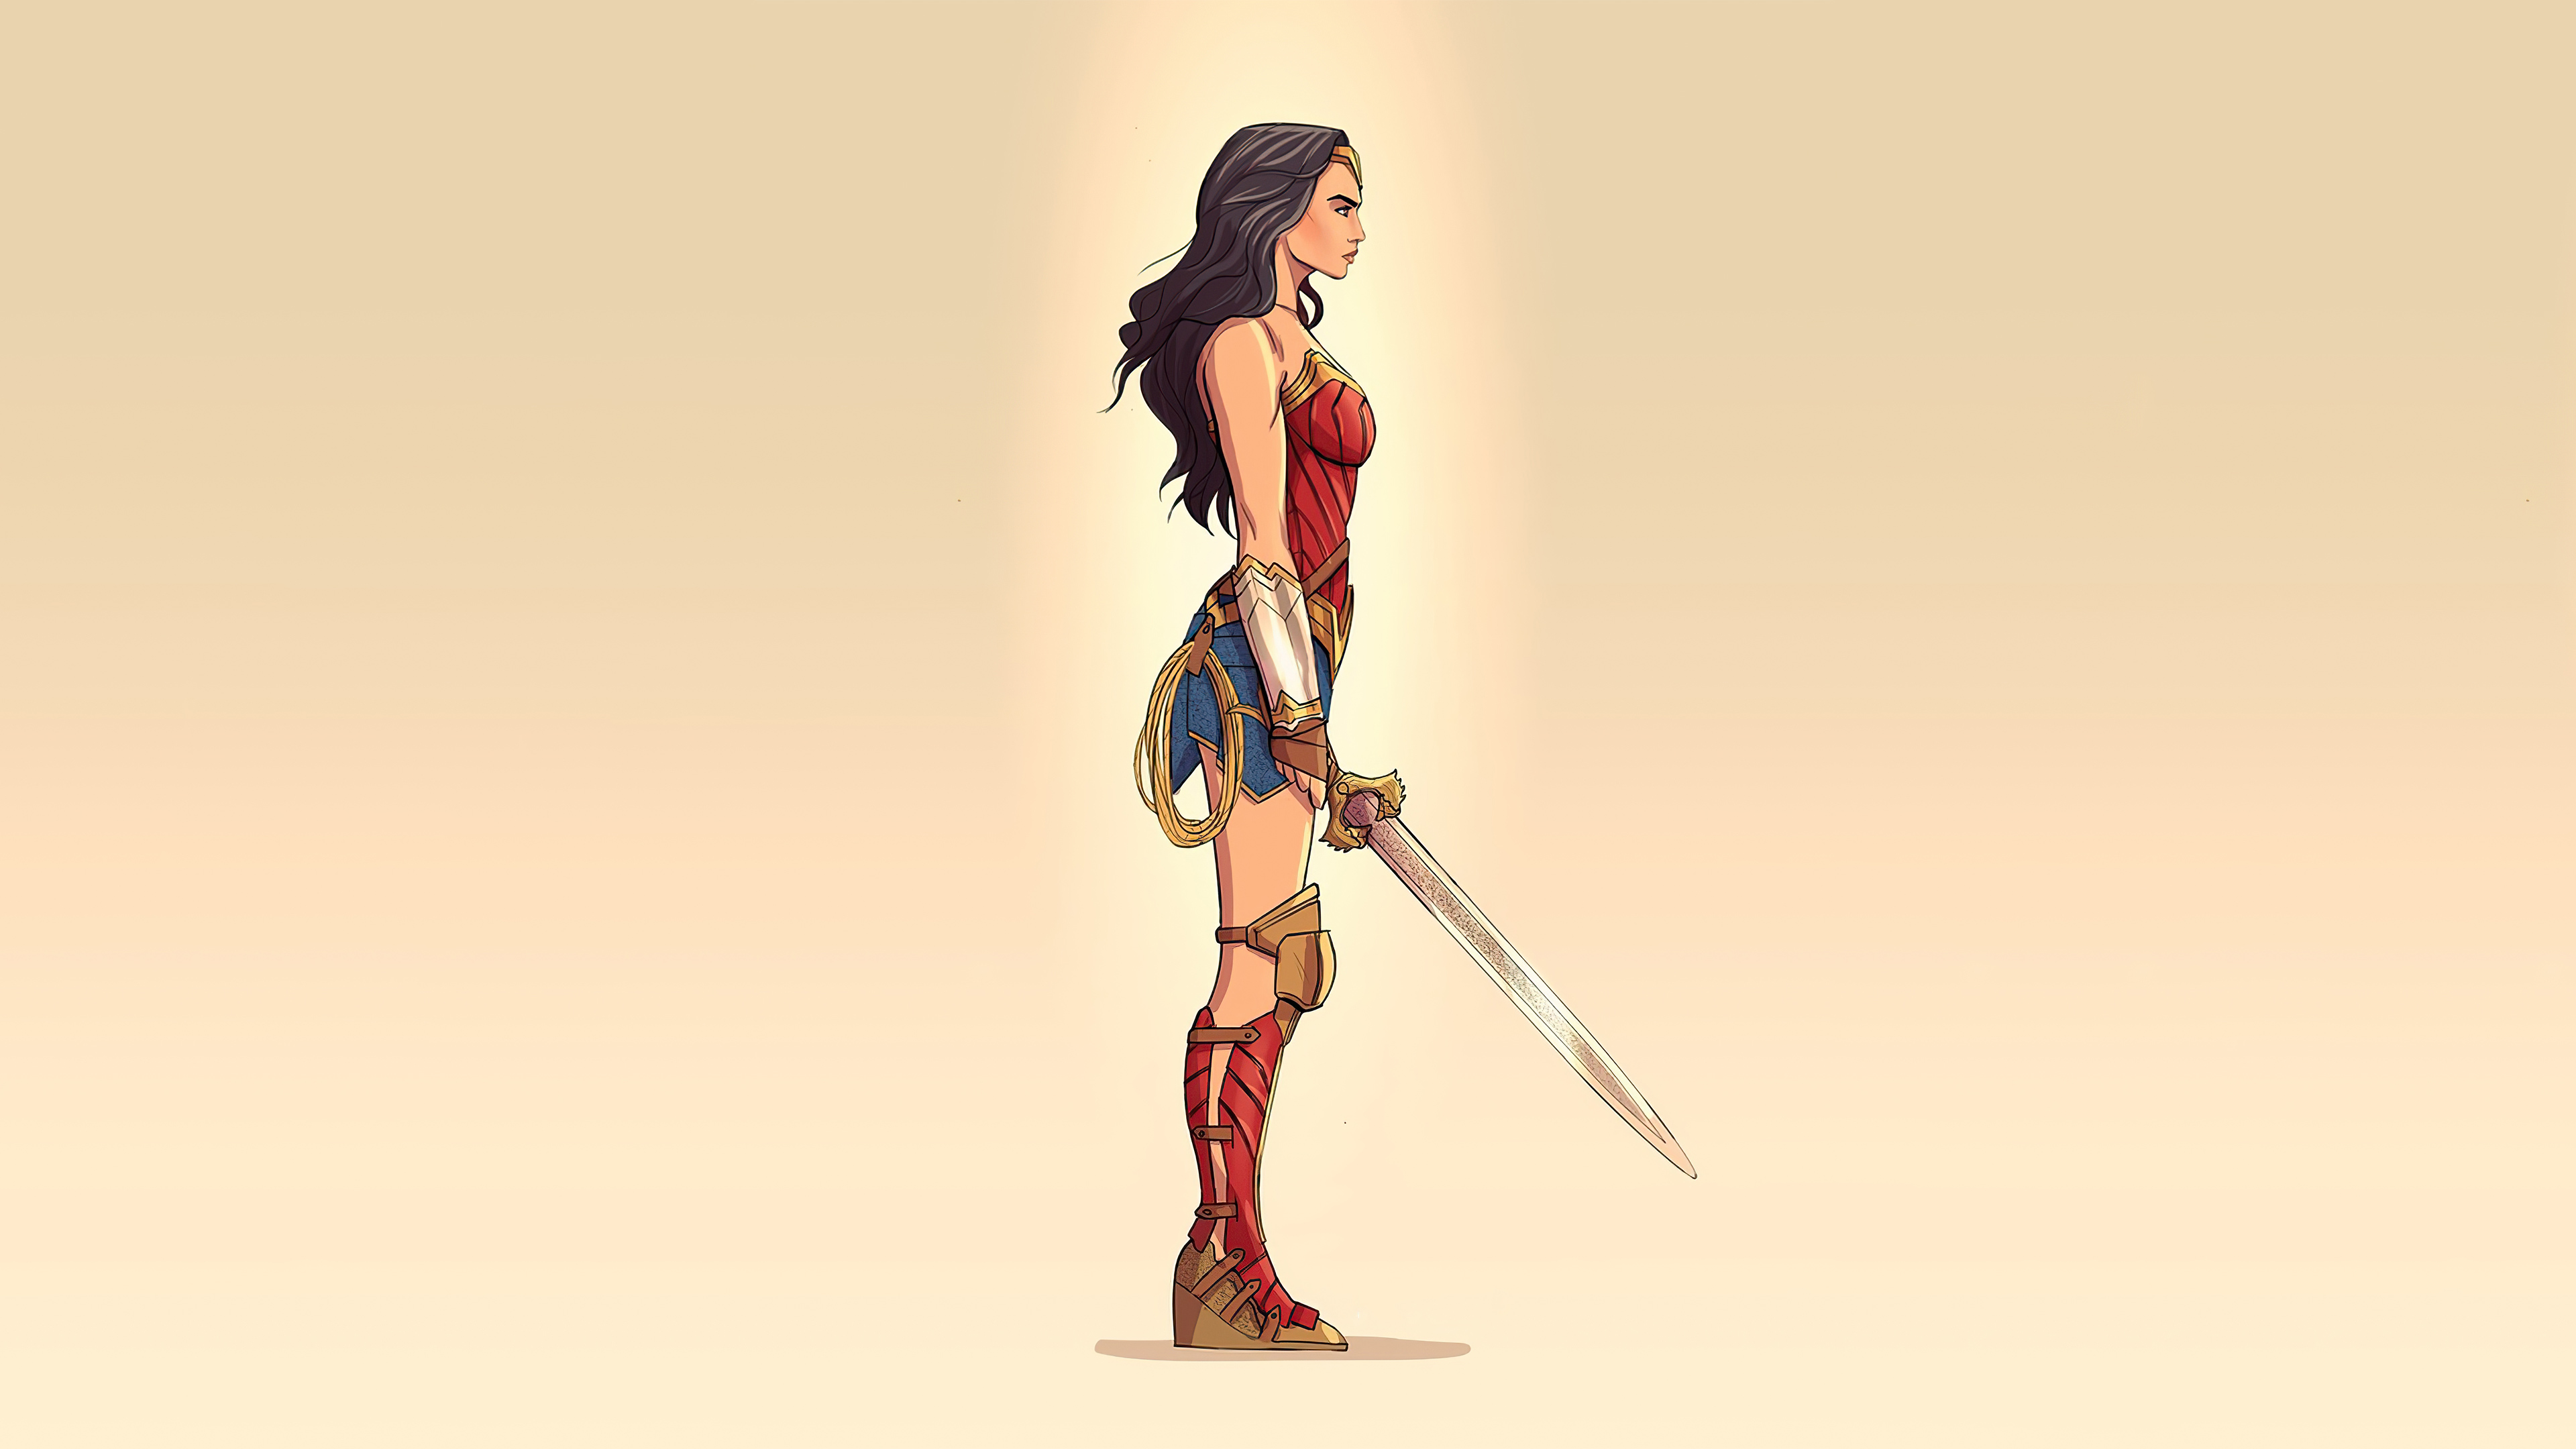 Minimalist Illustration of Wonder Woman Wallpaper 4k Ultra HD ID:5886